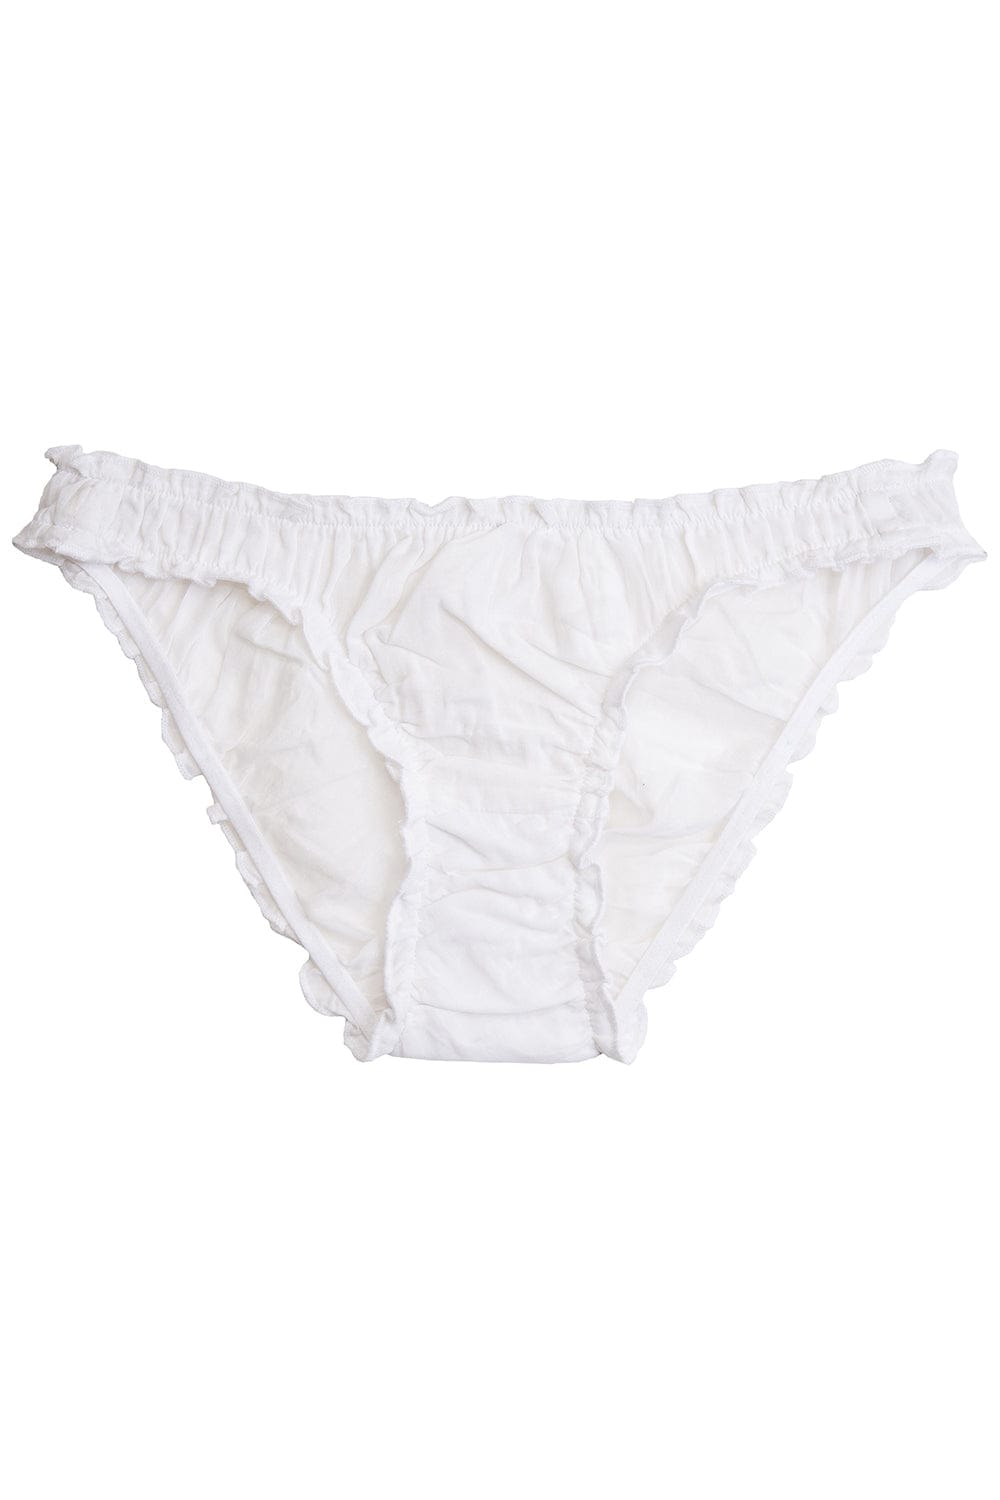 Fancy white panties 100% organic cotton - Germaine des prés